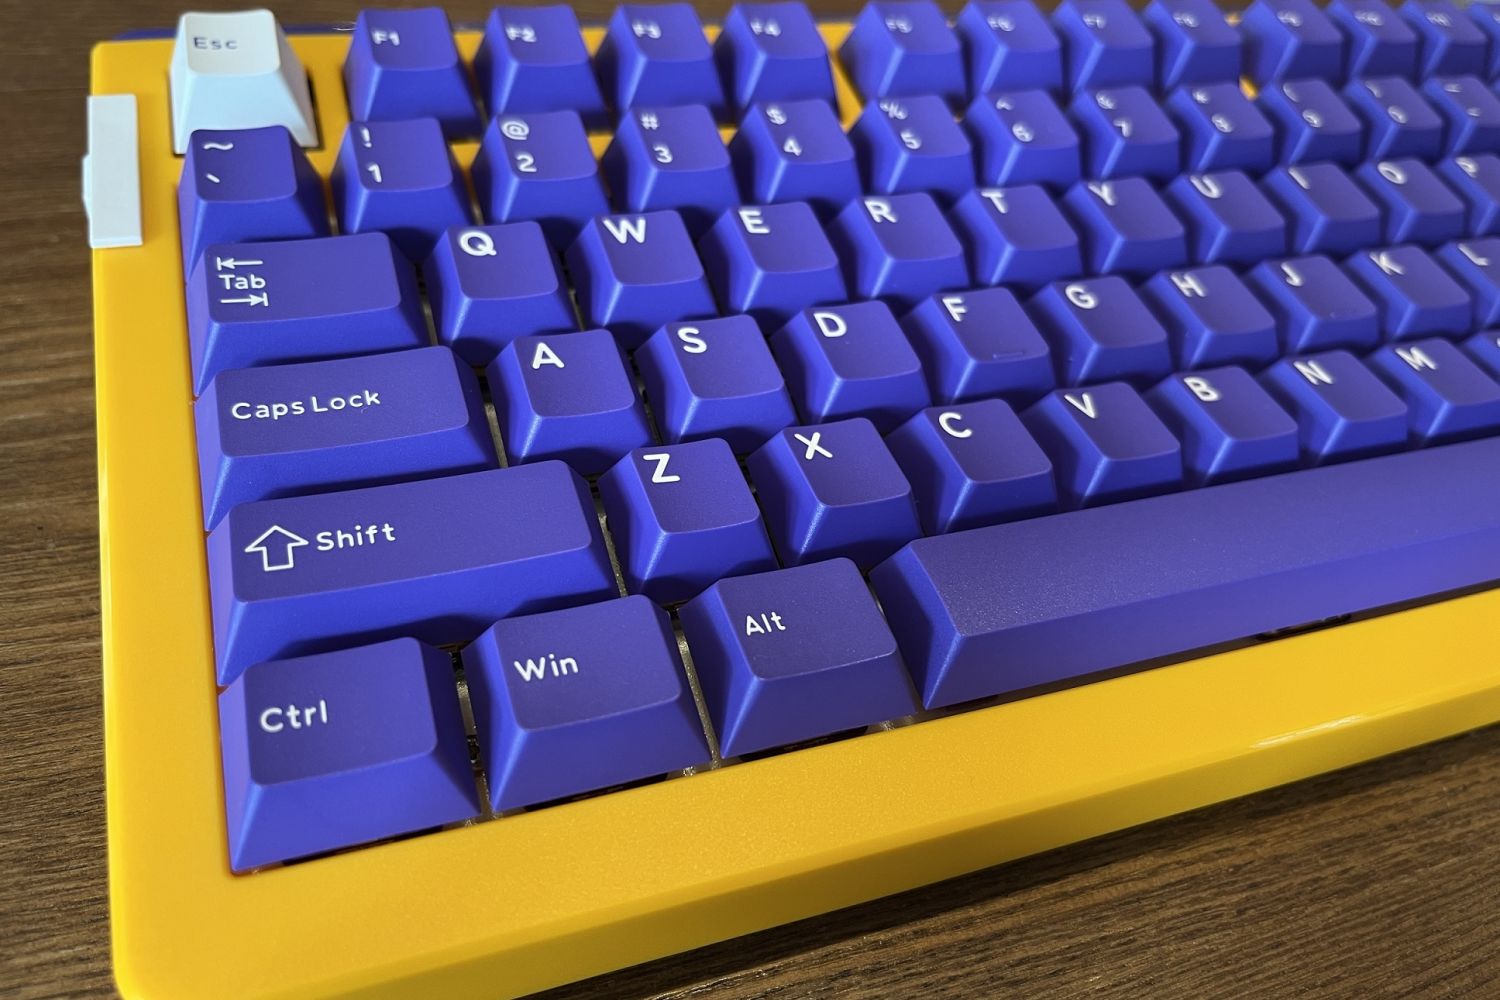 达尔优A81三模机械键盘：湖人配色，超强手感